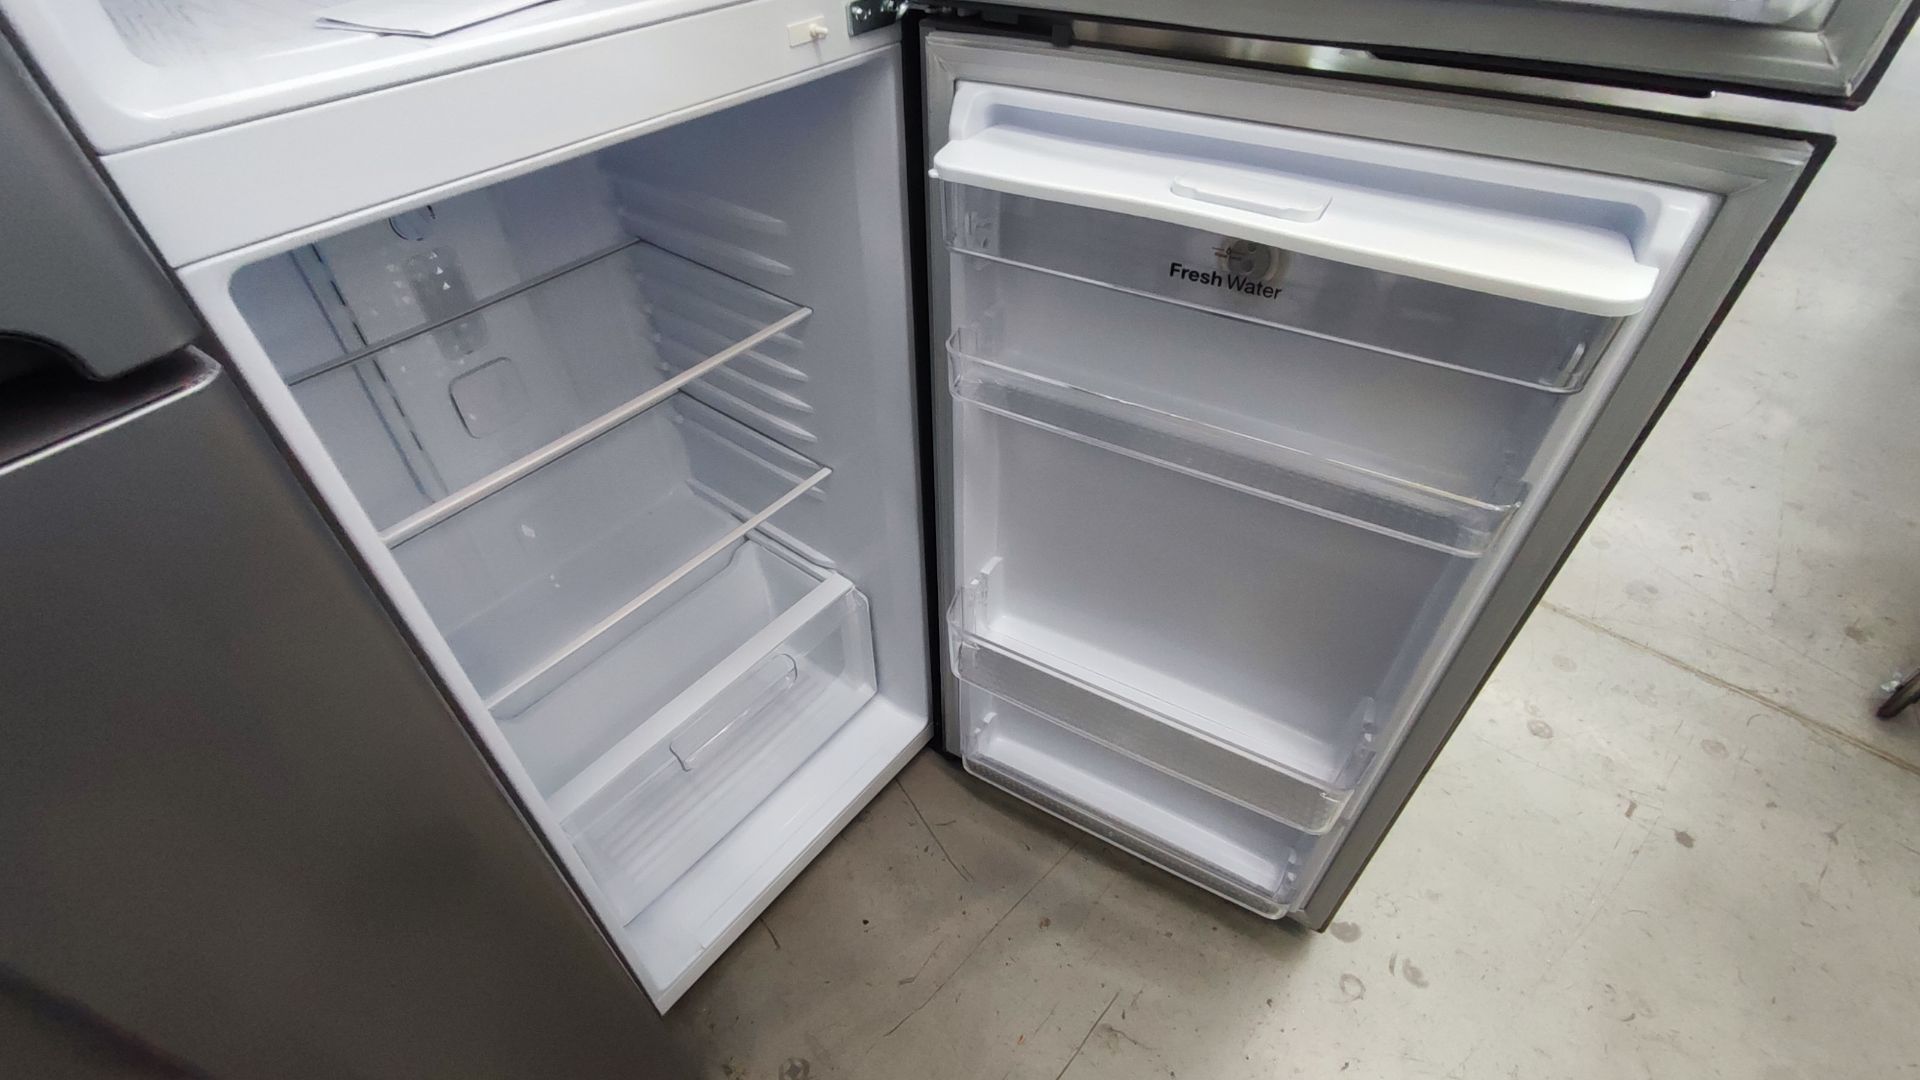 Lote Conformado por 2 Refrigeradores, Contiene; 1 Refrigerador con Dispensador de Agua Marca Whirlp - Image 12 of 13